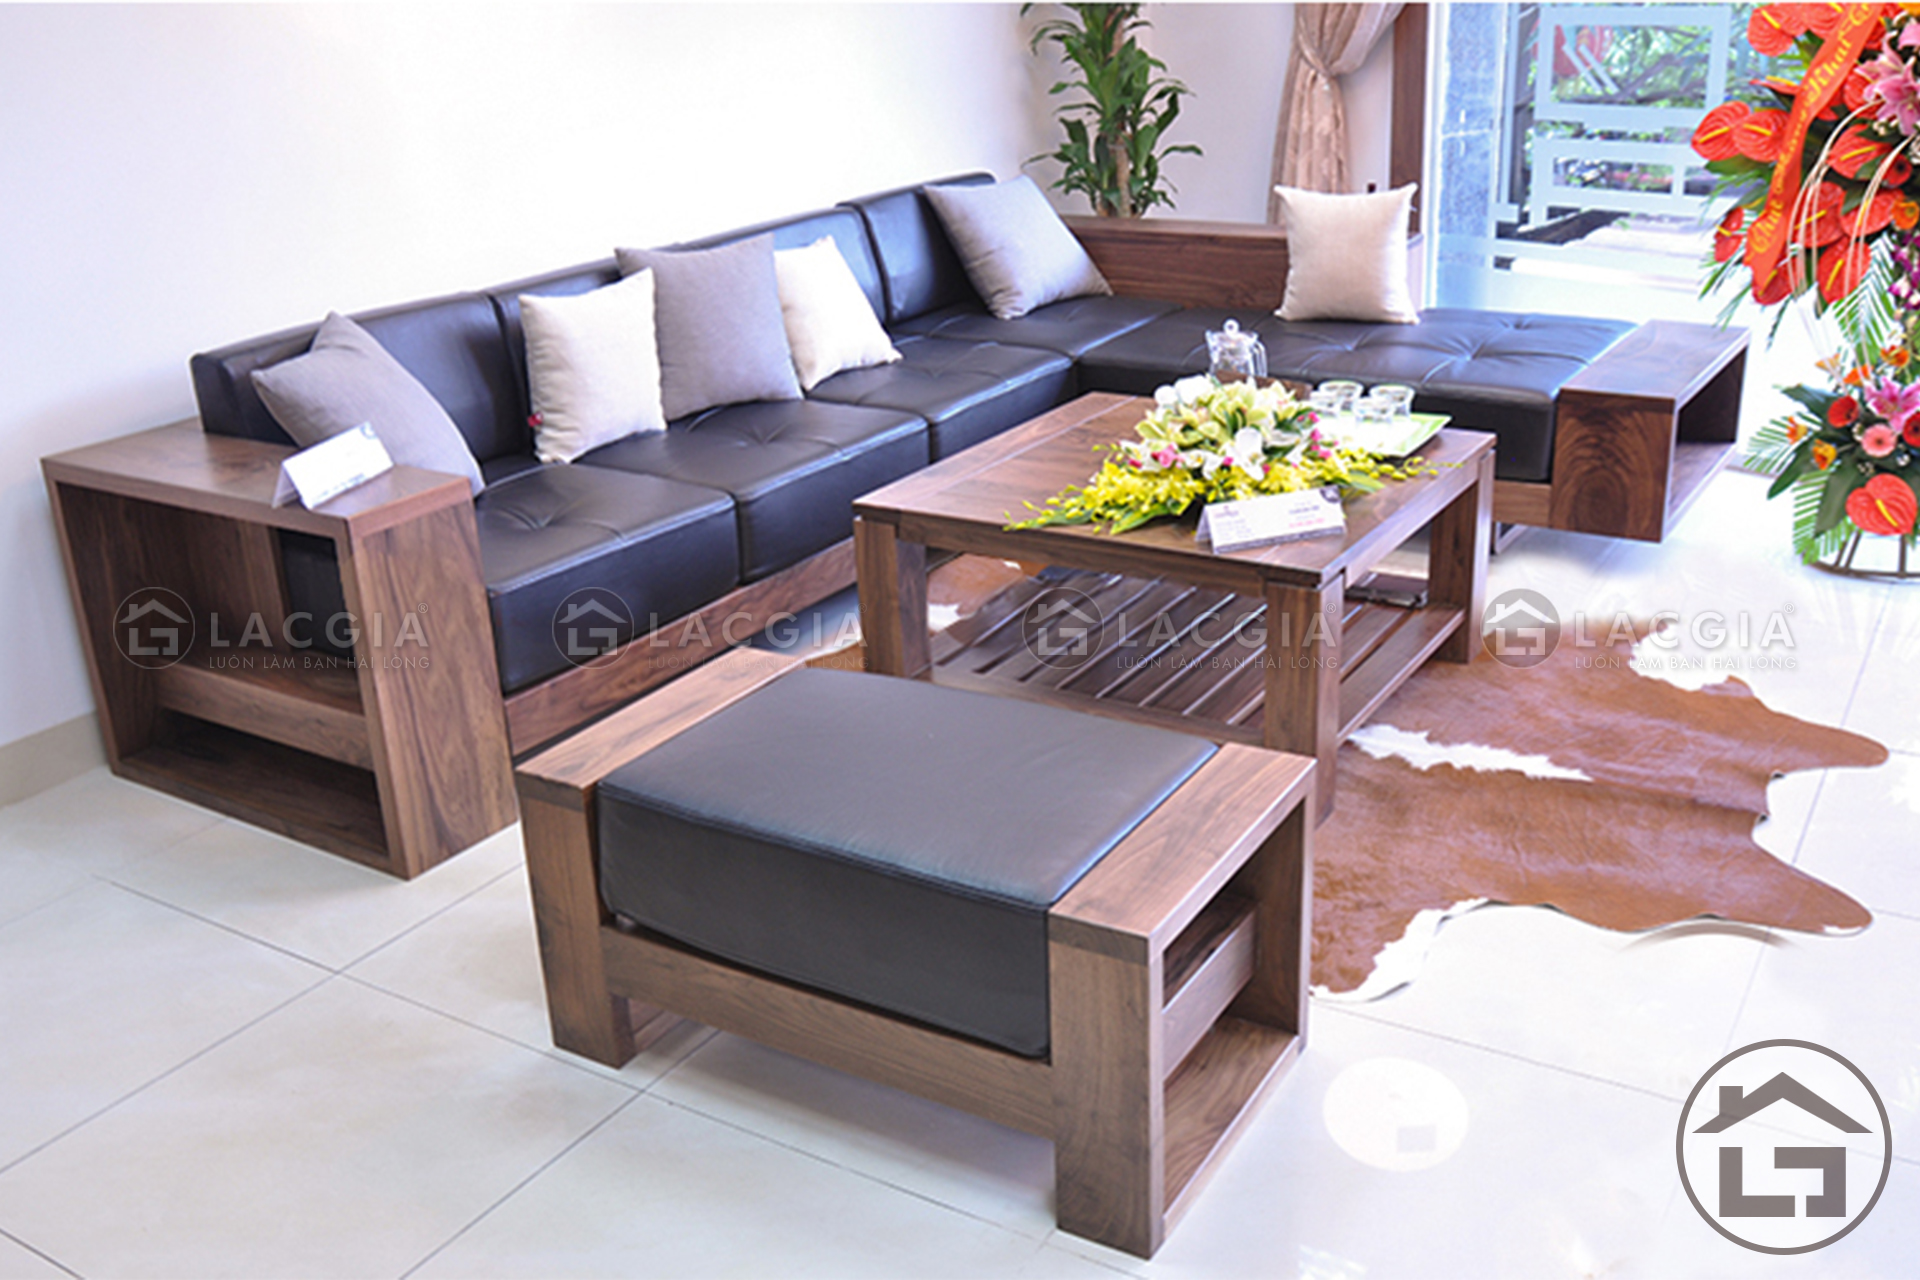 sofa go cao cap - Tổng hợp các mẫu sofa gỗ chữ L giá rẻ tại Nội Thất Lạc Gia